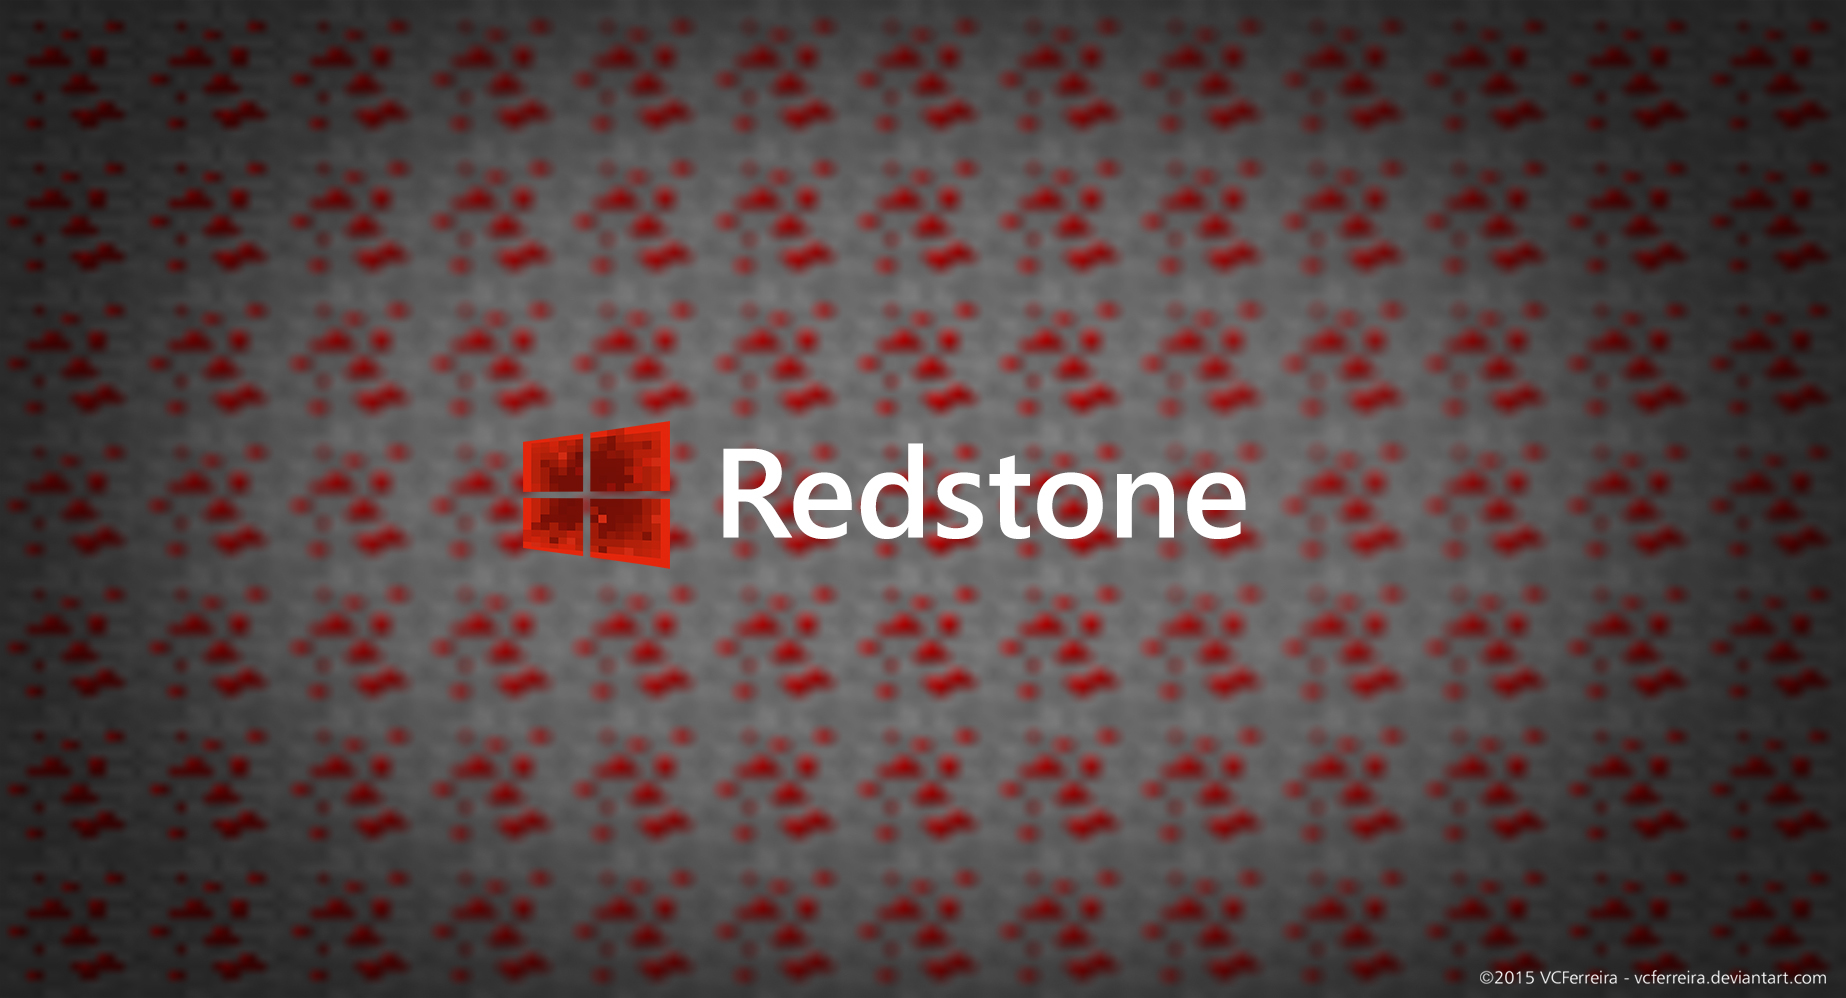 Windows Redstone Wallpaper - WallpaperSafari